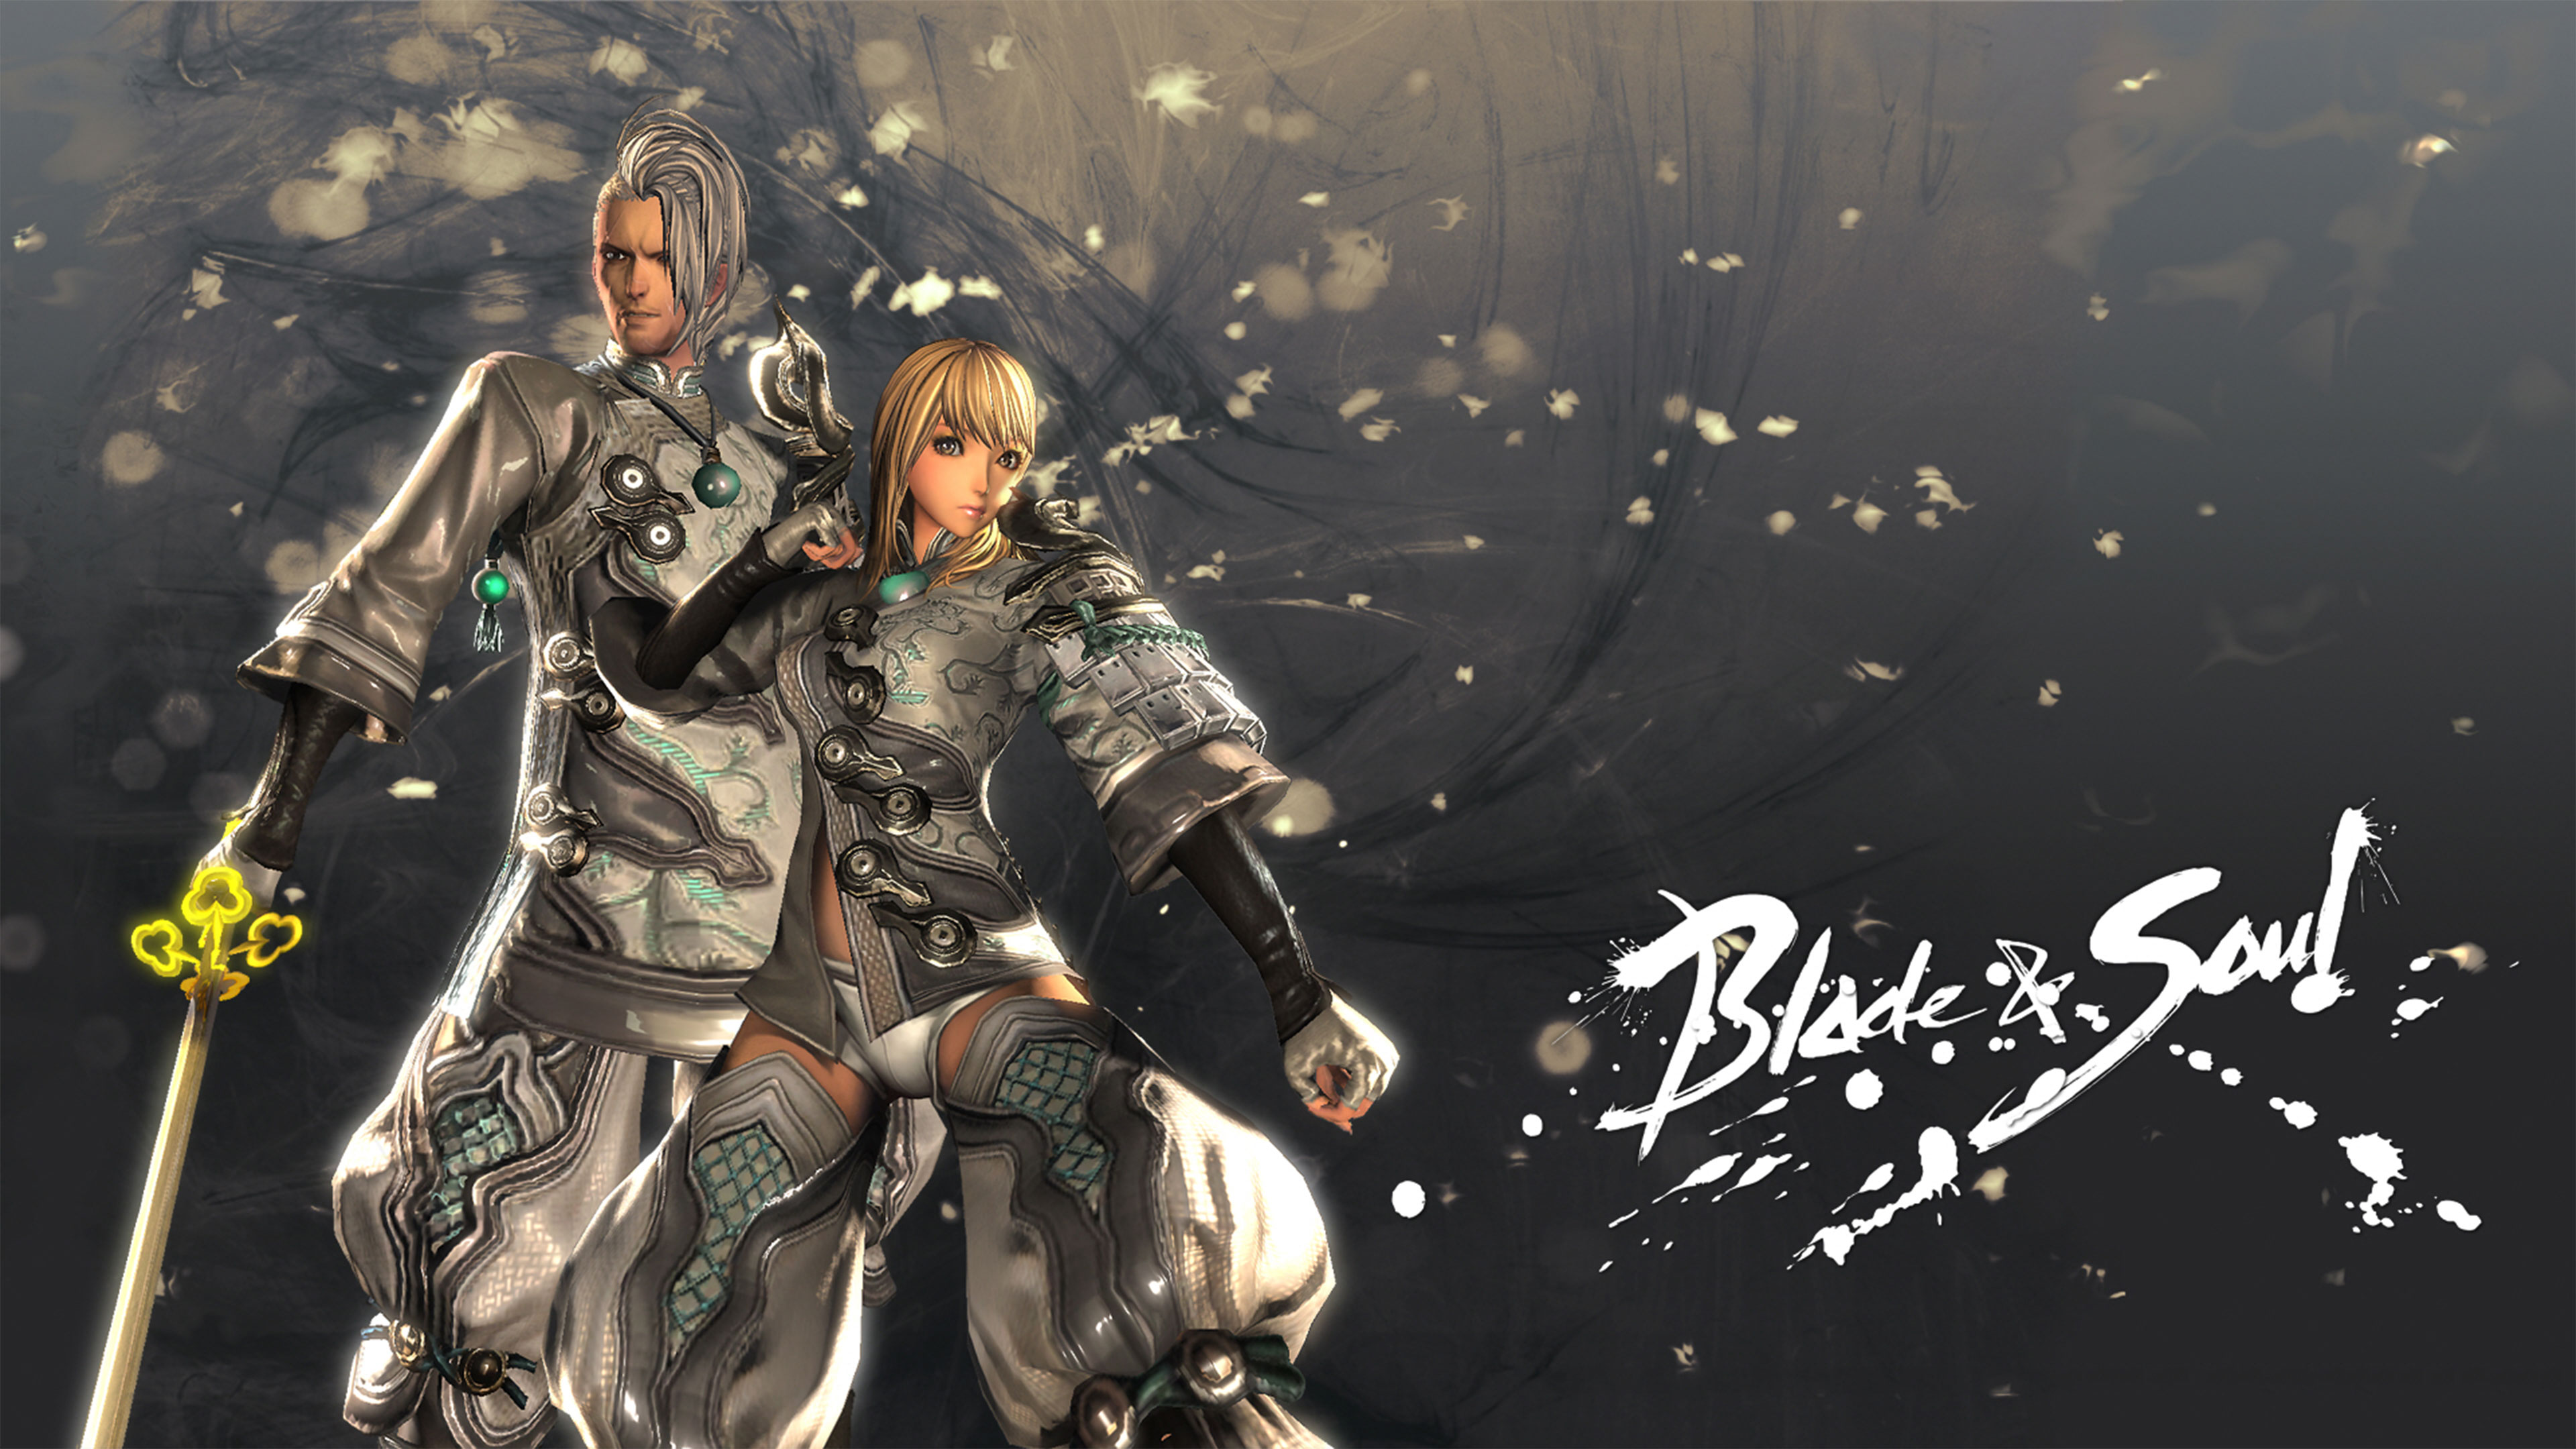 Blade & Soul Wallpapers in Ultra HD | 4K - Gameranx